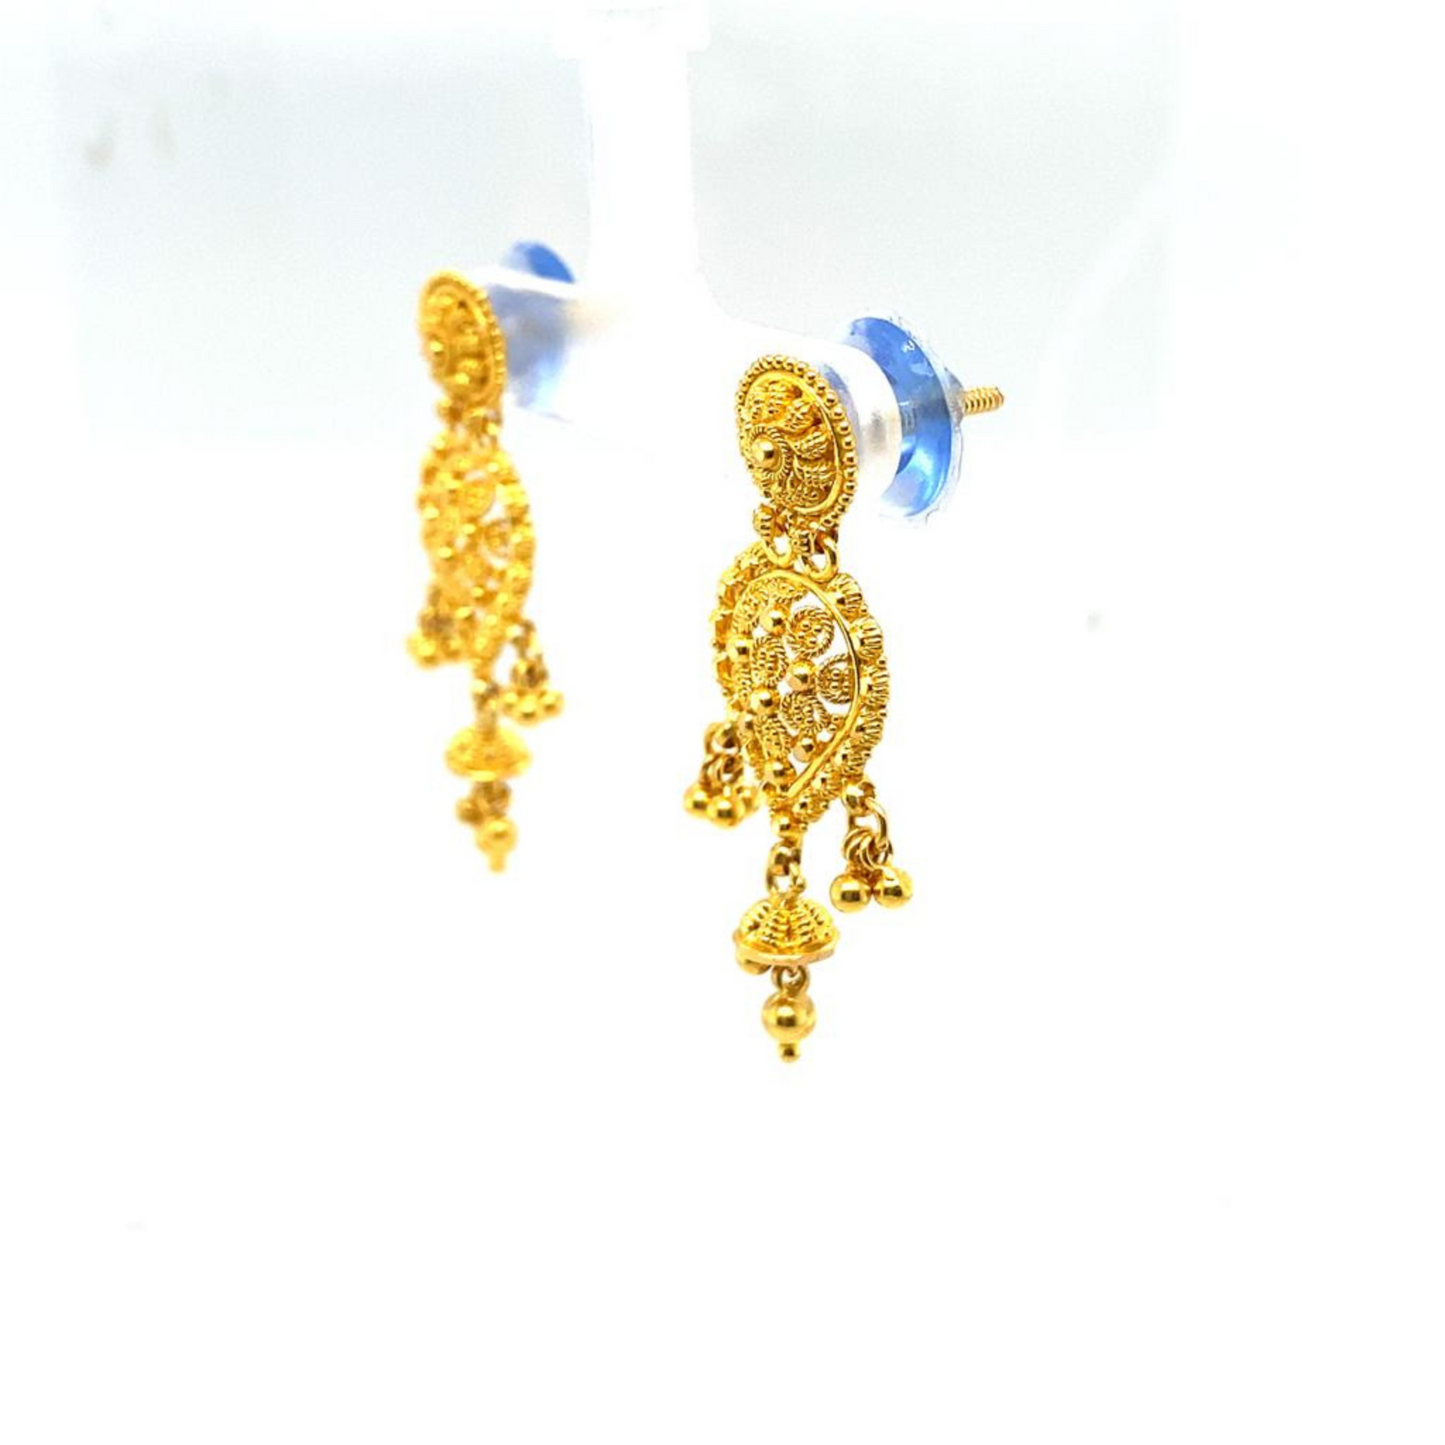 22KT Gold, Dangling Earrings